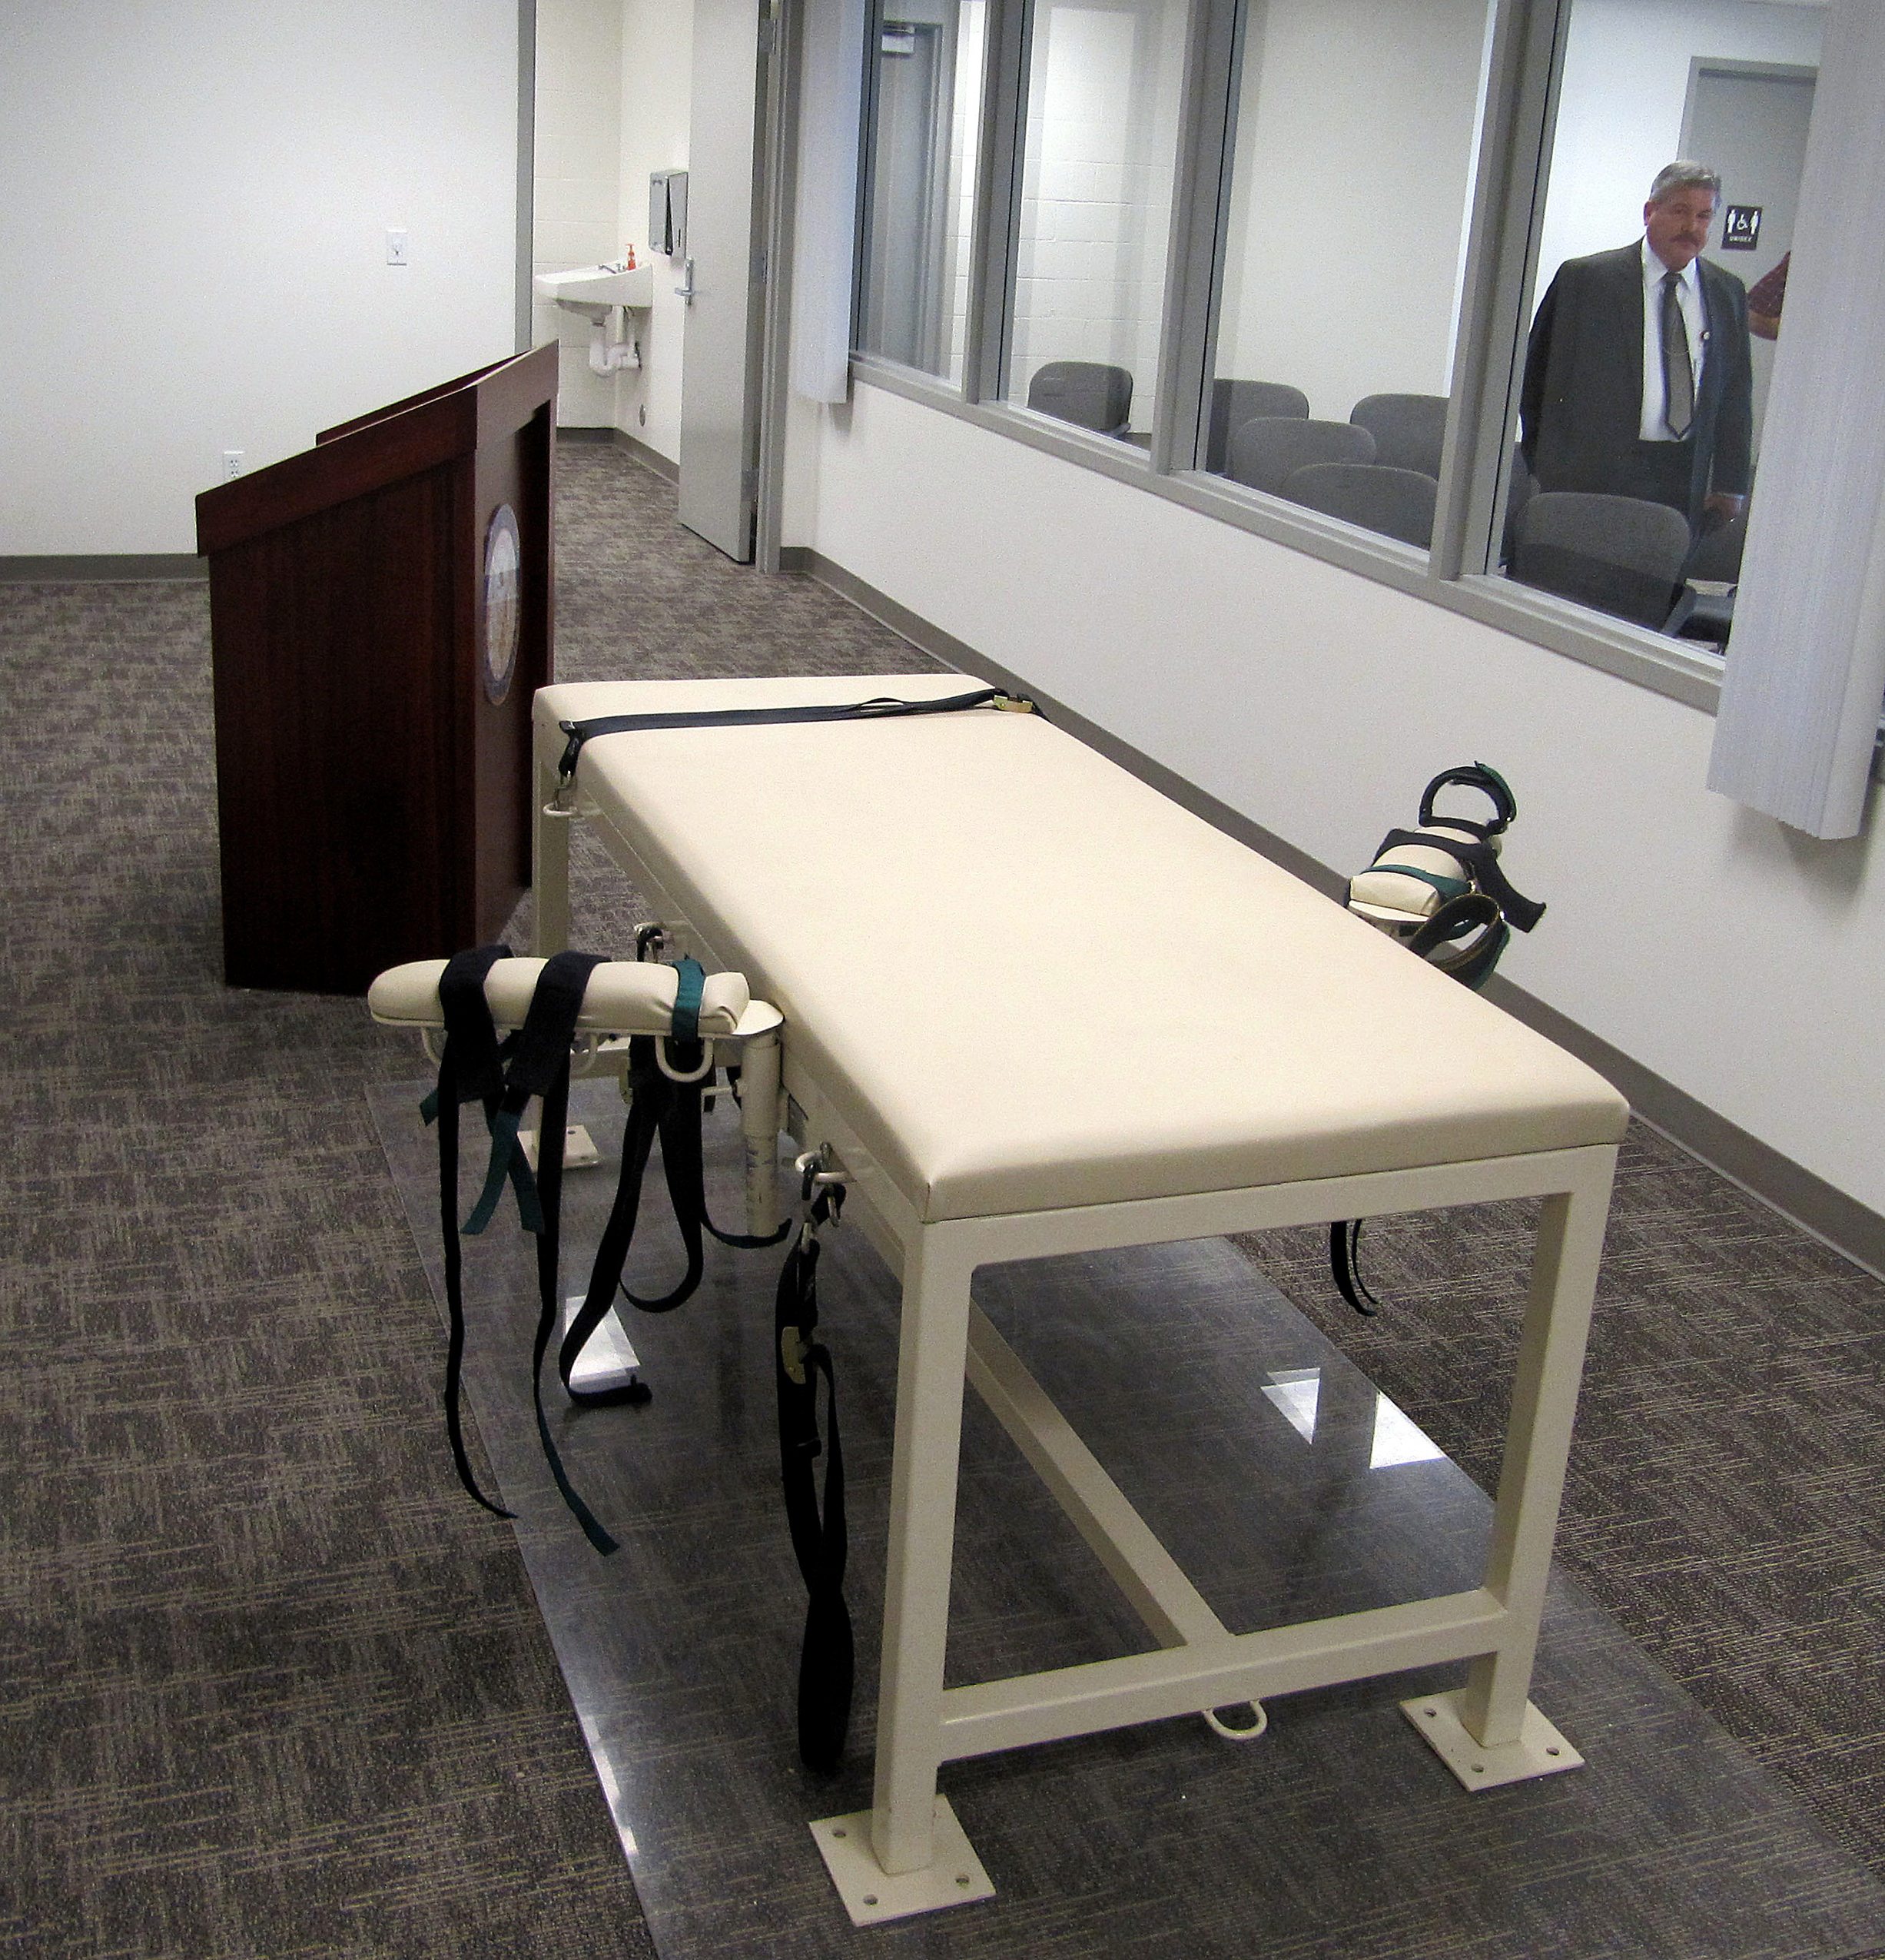 ARCHIVO - La cámara para ejecuciones en la institución de máxima seguridad de Idaho, en Boise, Idaho, el 20 de octubre de 2011. (AP Foto/Jessie L. Bonner, archivo)